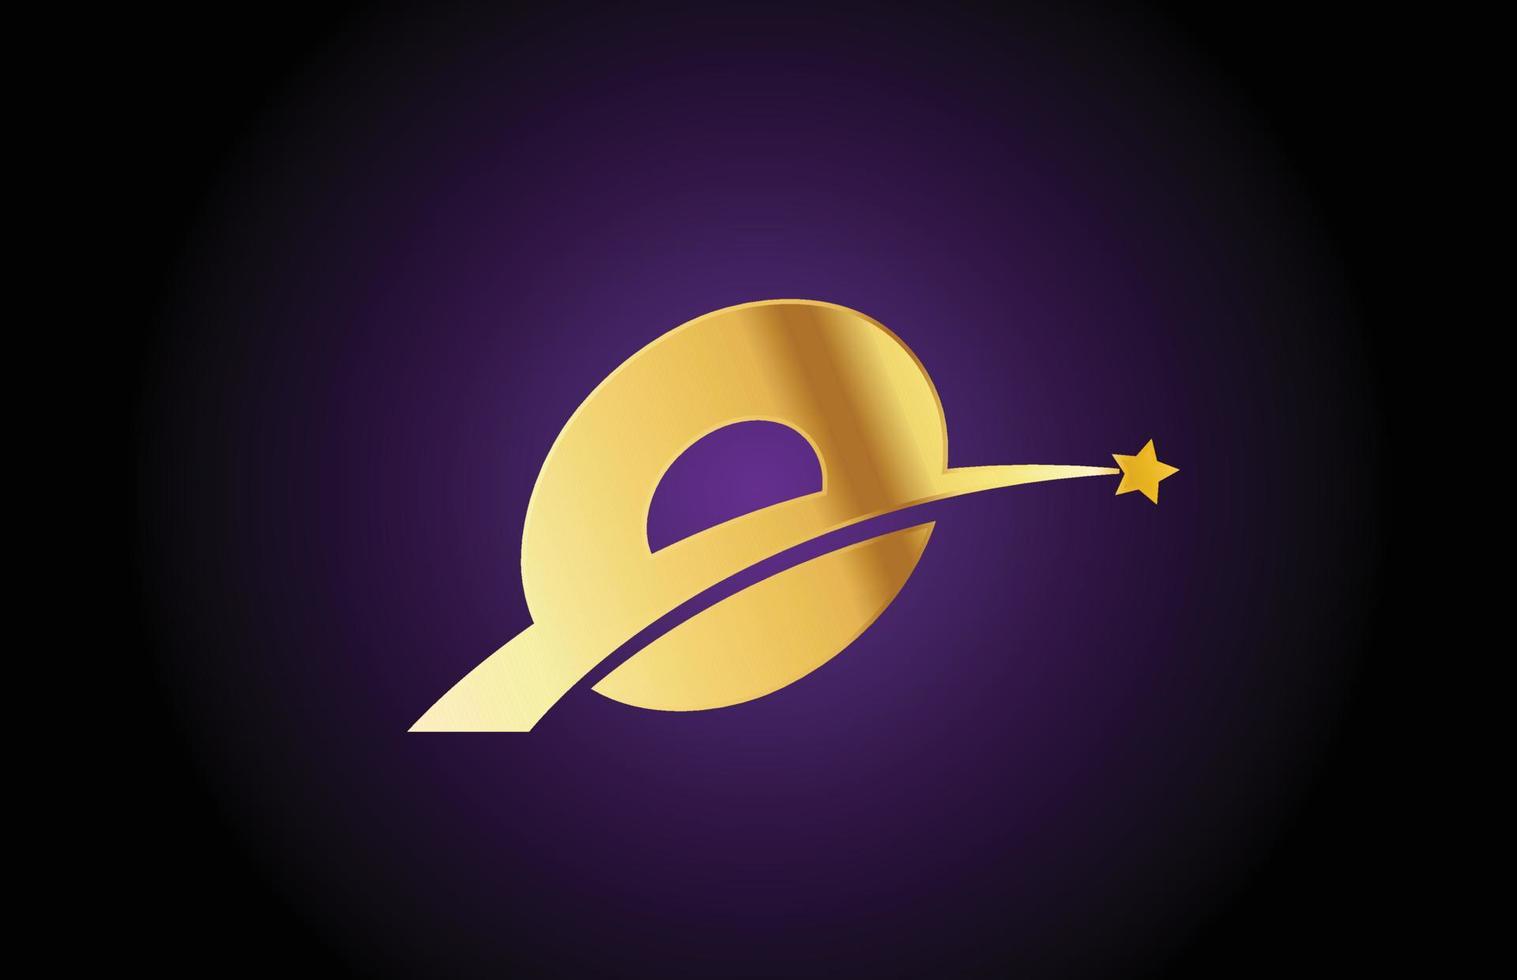 icona del logo della lettera dell'alfabeto dorato o dorato con stella. design creativo per affari o società con swoosh vettore